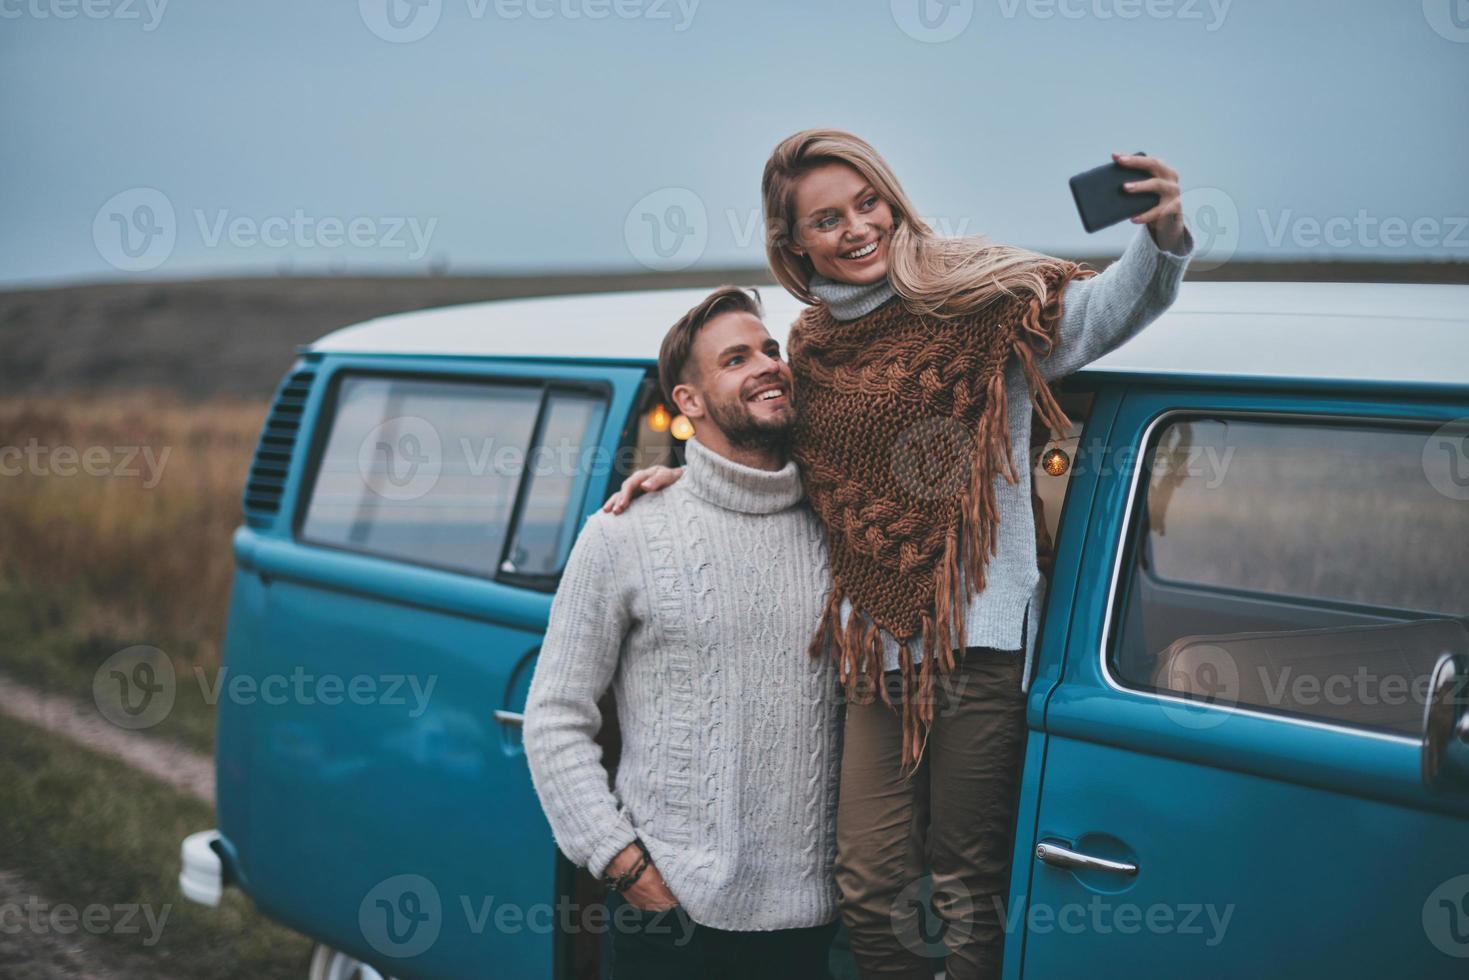 este vai no quadro. lindo casal jovem tomando selfie e sorrindo enquanto desfruta de sua viagem rodoviária foto